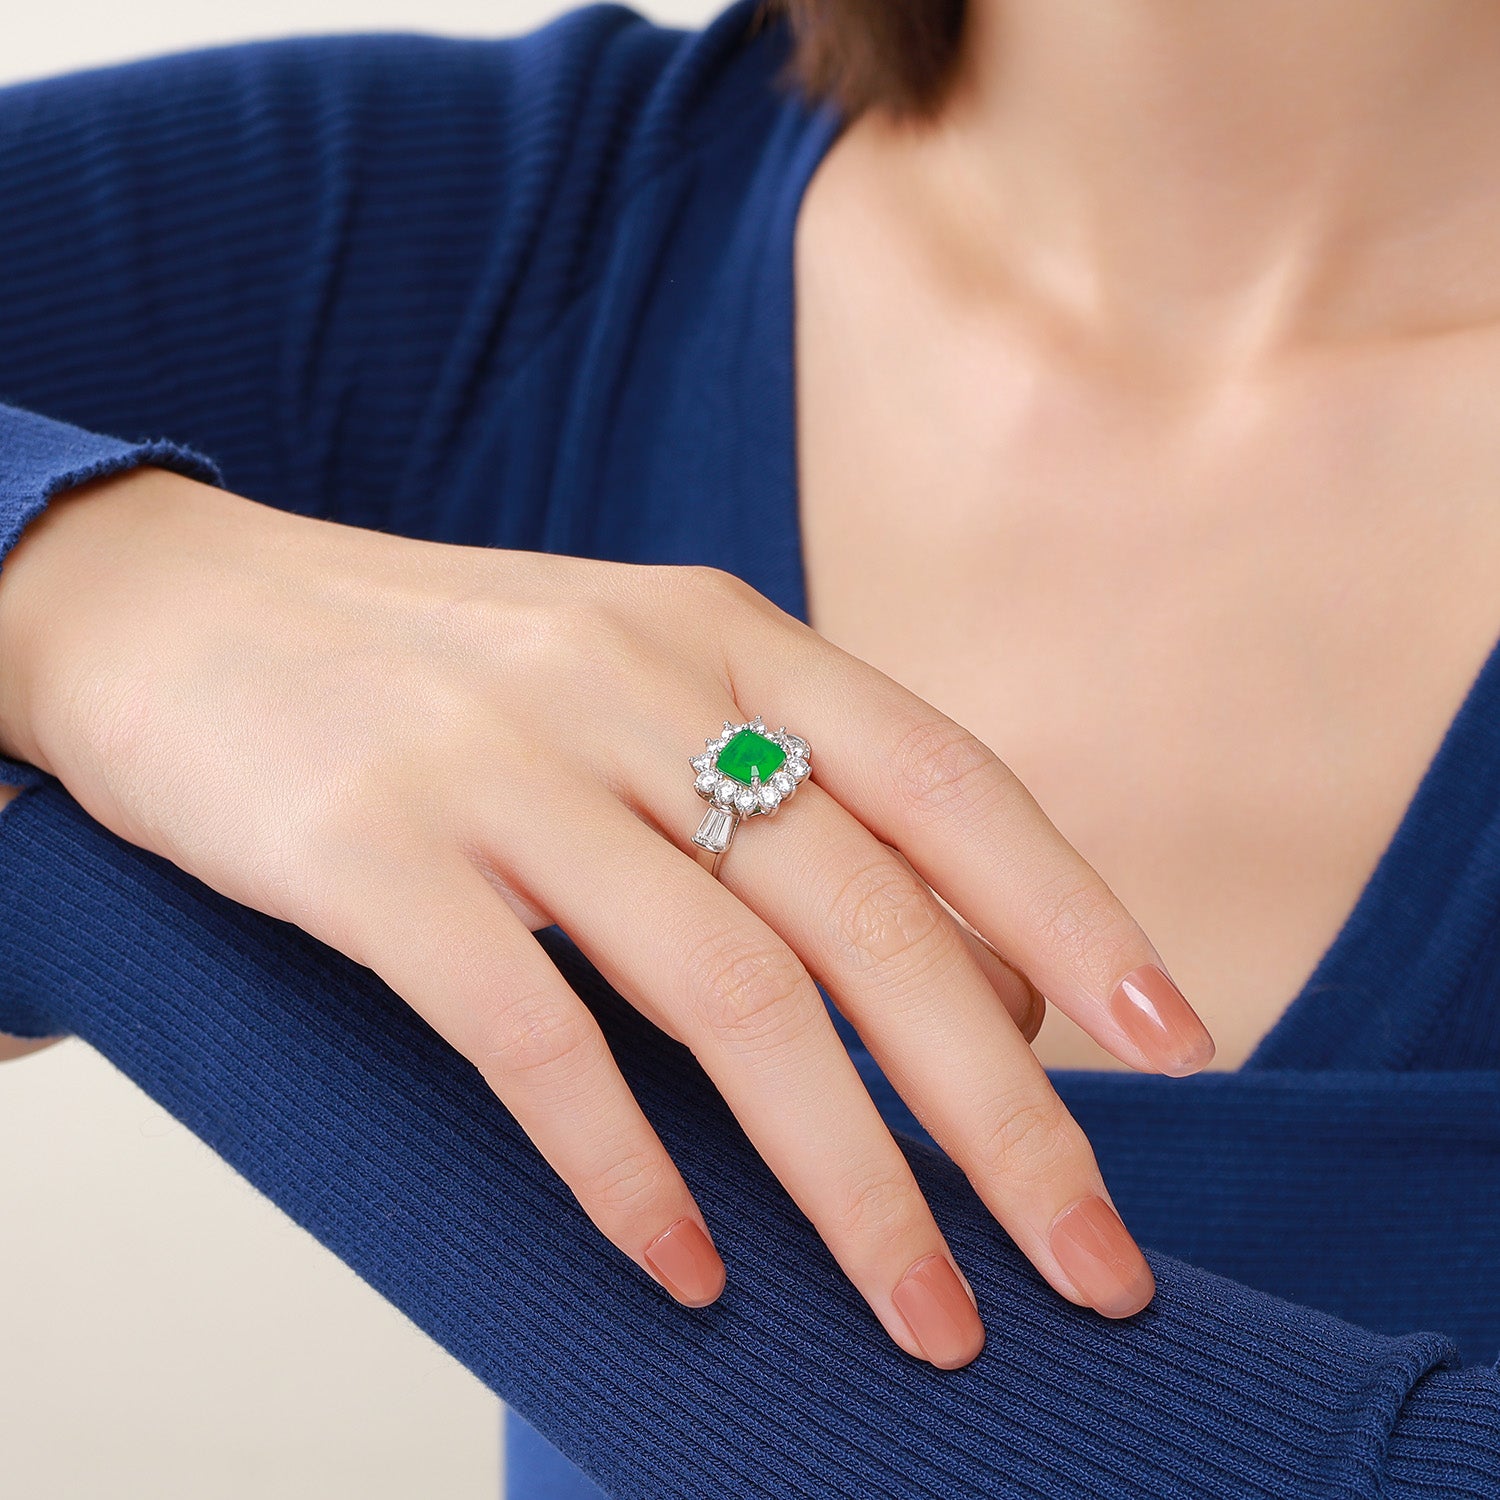 Dissoo® Emerald Green Asscher Floral Cluster Cocktail Engagement Ring